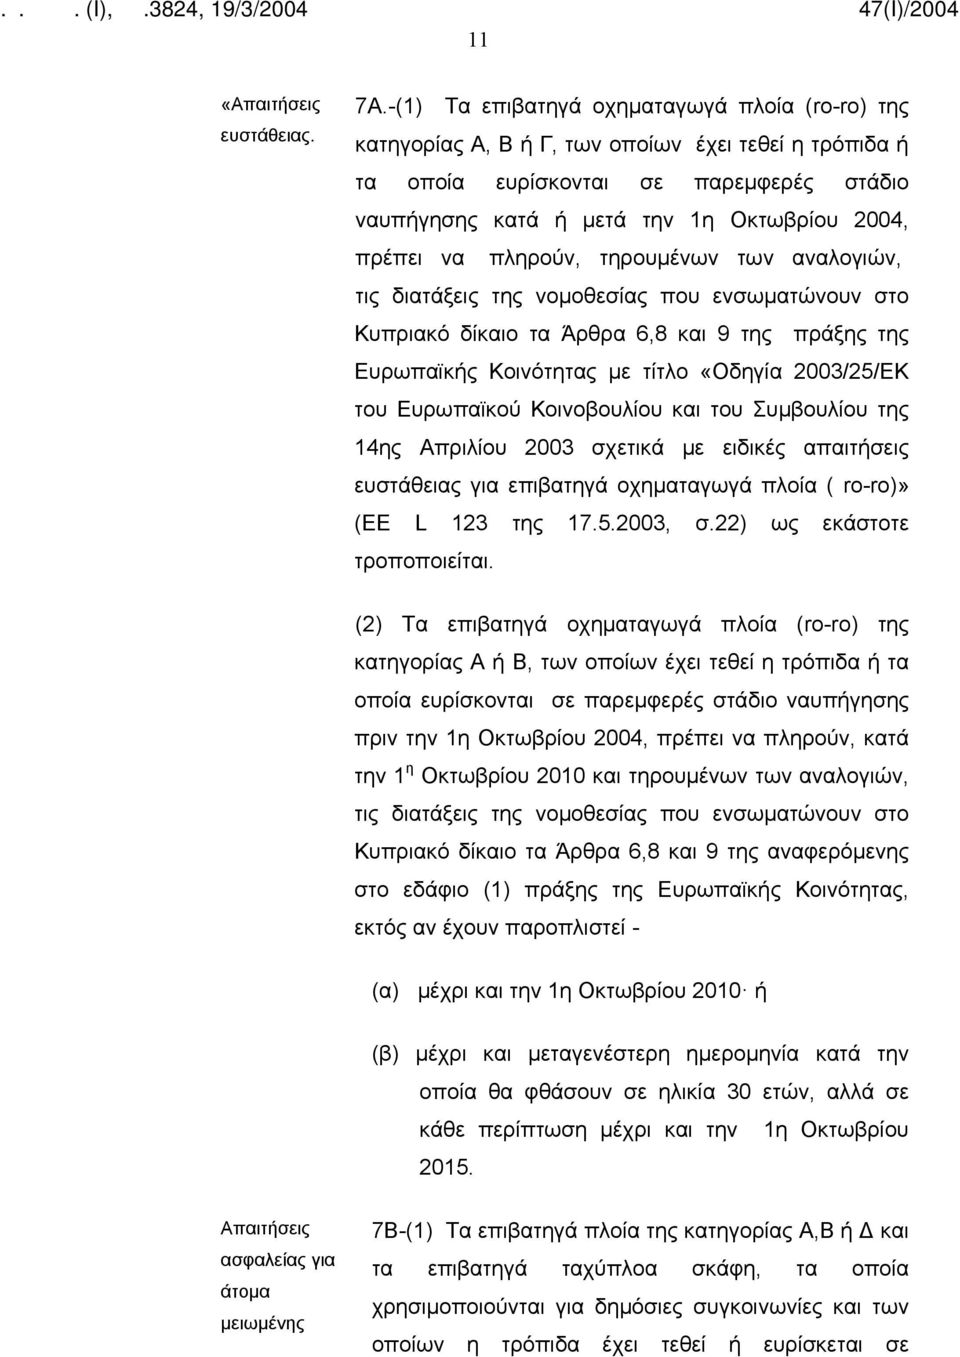 να πληρούν, τηρουμένων των αναλογιών, τις διατάξεις της νομοθεσίας που ενσωματώνουν στο Κυπριακό δίκαιο τα Άρθρα 6,8 και 9 της πράξης της Ευρωπαϊκής Κοινότητας με τίτλο «Οδηγία 2003/25/ΕΚ του